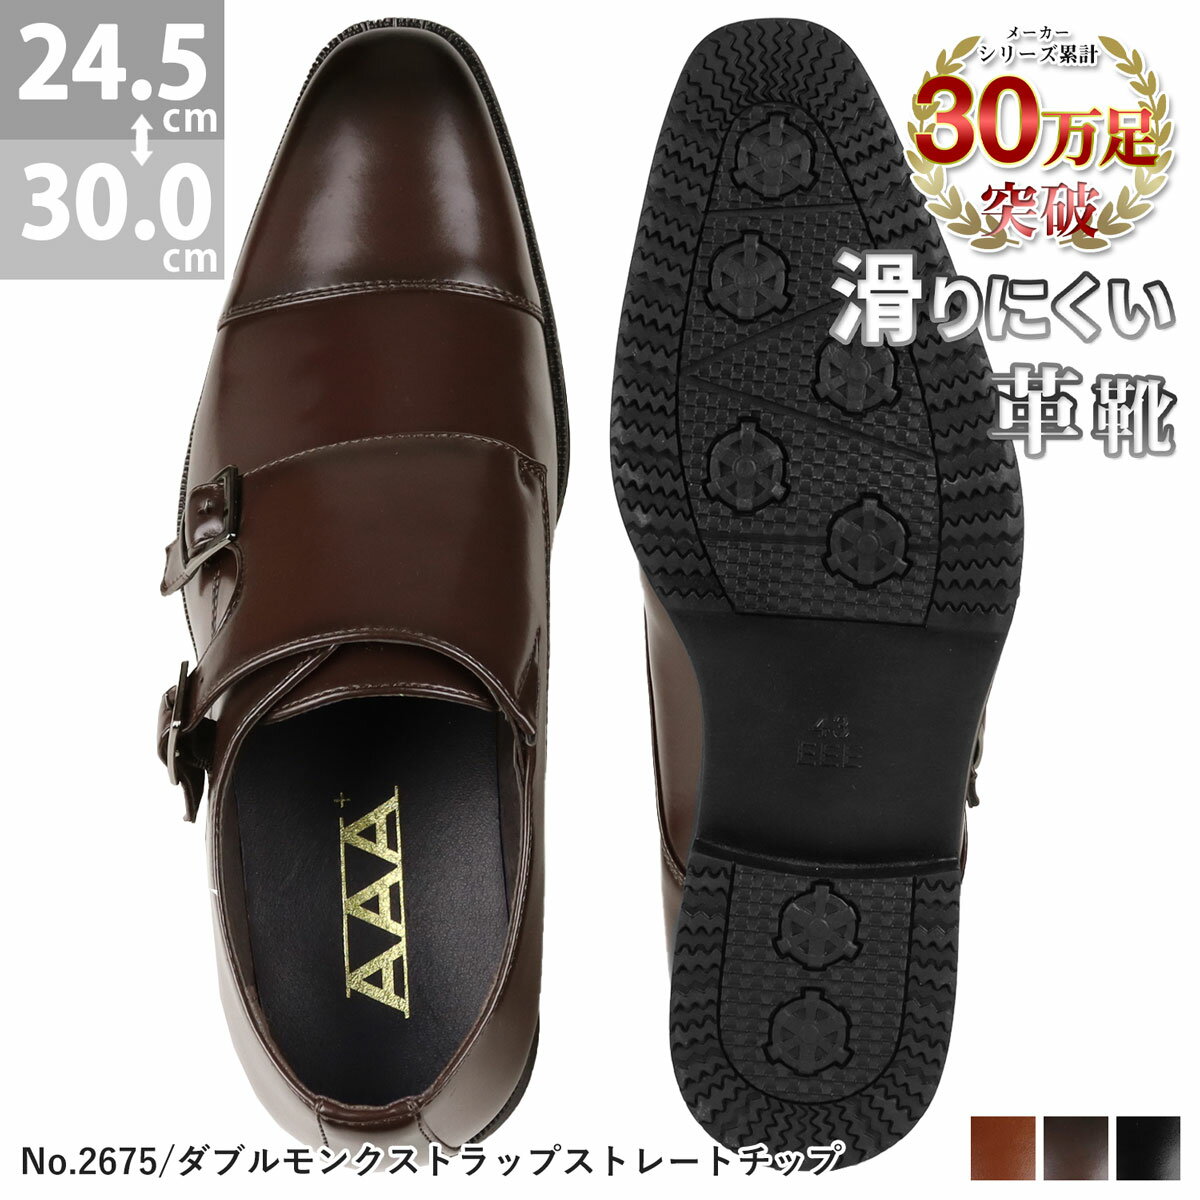 ビジネスシューズ メンズ 大きいサイズ 幅広 3E モンク 革靴 ダブルモンクストラップ ストレートチップ 歩きやすい 防滑 雨 履きやすい ロングノーズ ブラック ブラウン No.2675 24.5-30cm 黒 茶 AAA+ サンエープラス